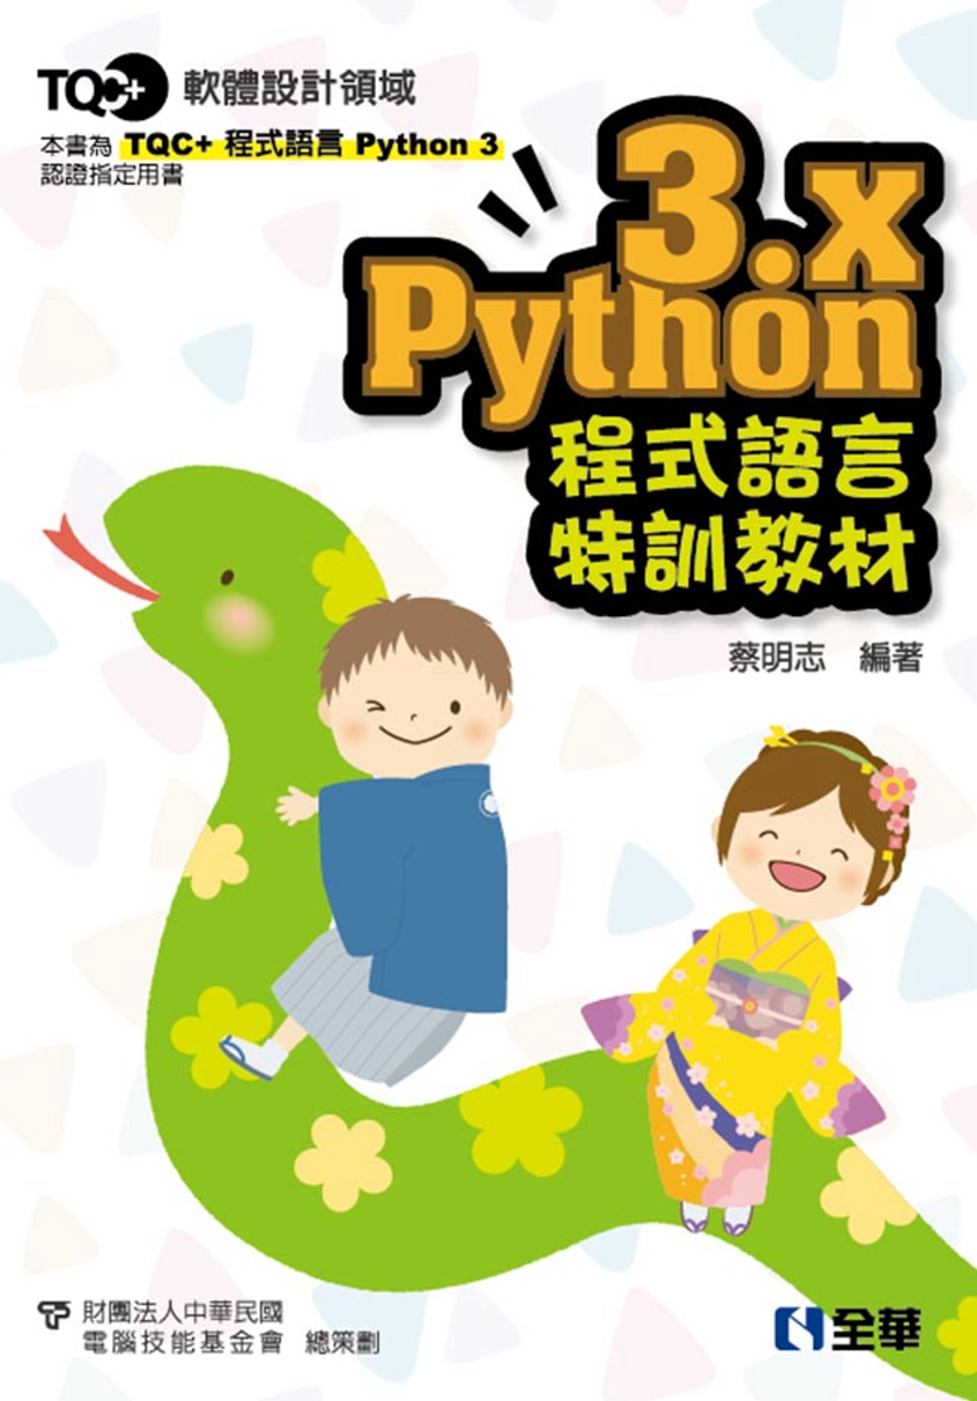 TQC+ Python 3.x 程式語言特訓教材